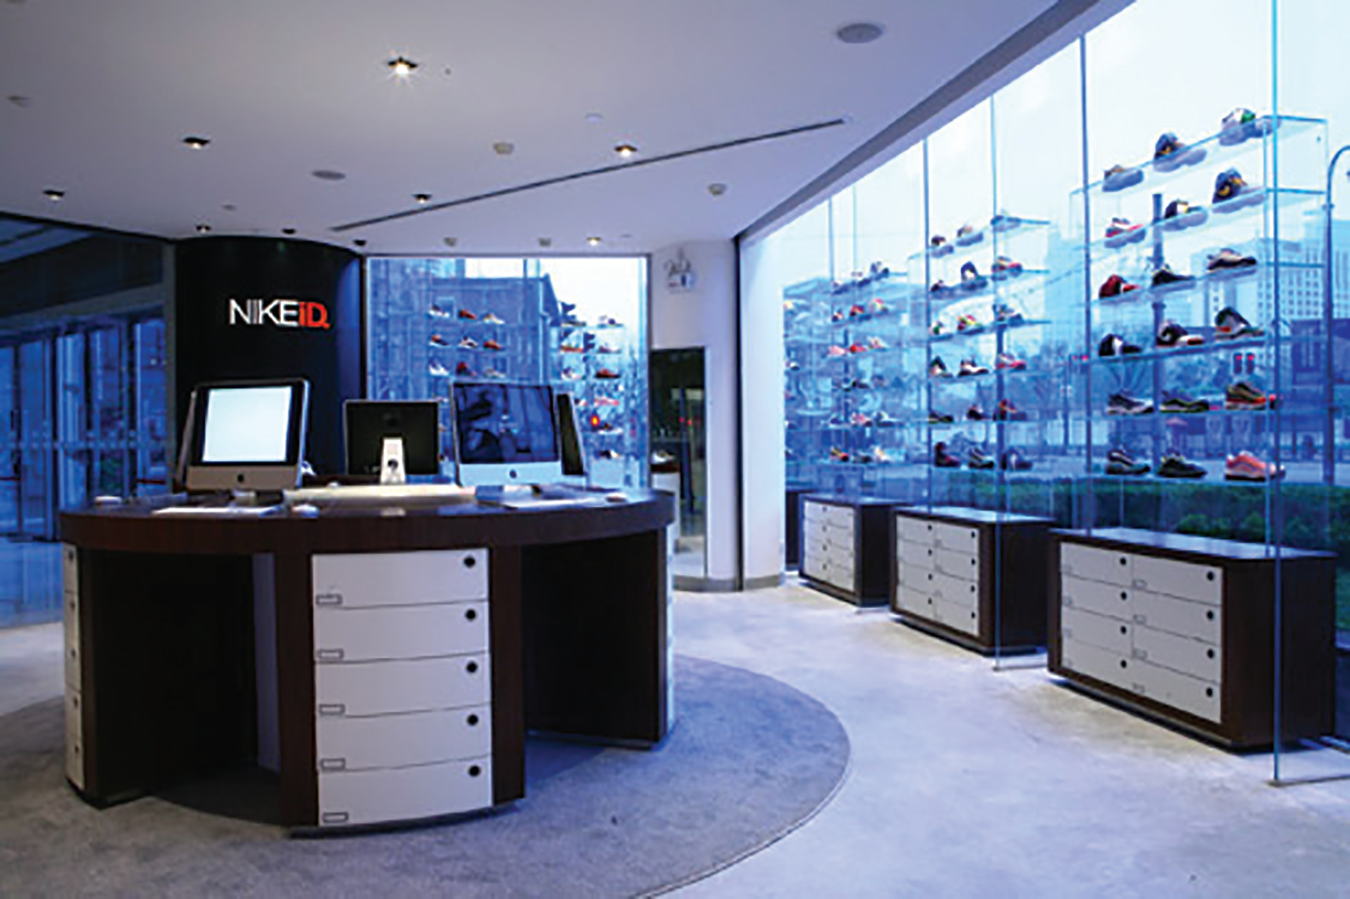 一张 NikeID 商店内部的照片，展示了玻璃窗旁架子上的鞋子，可以看到许多高层建筑的景色。